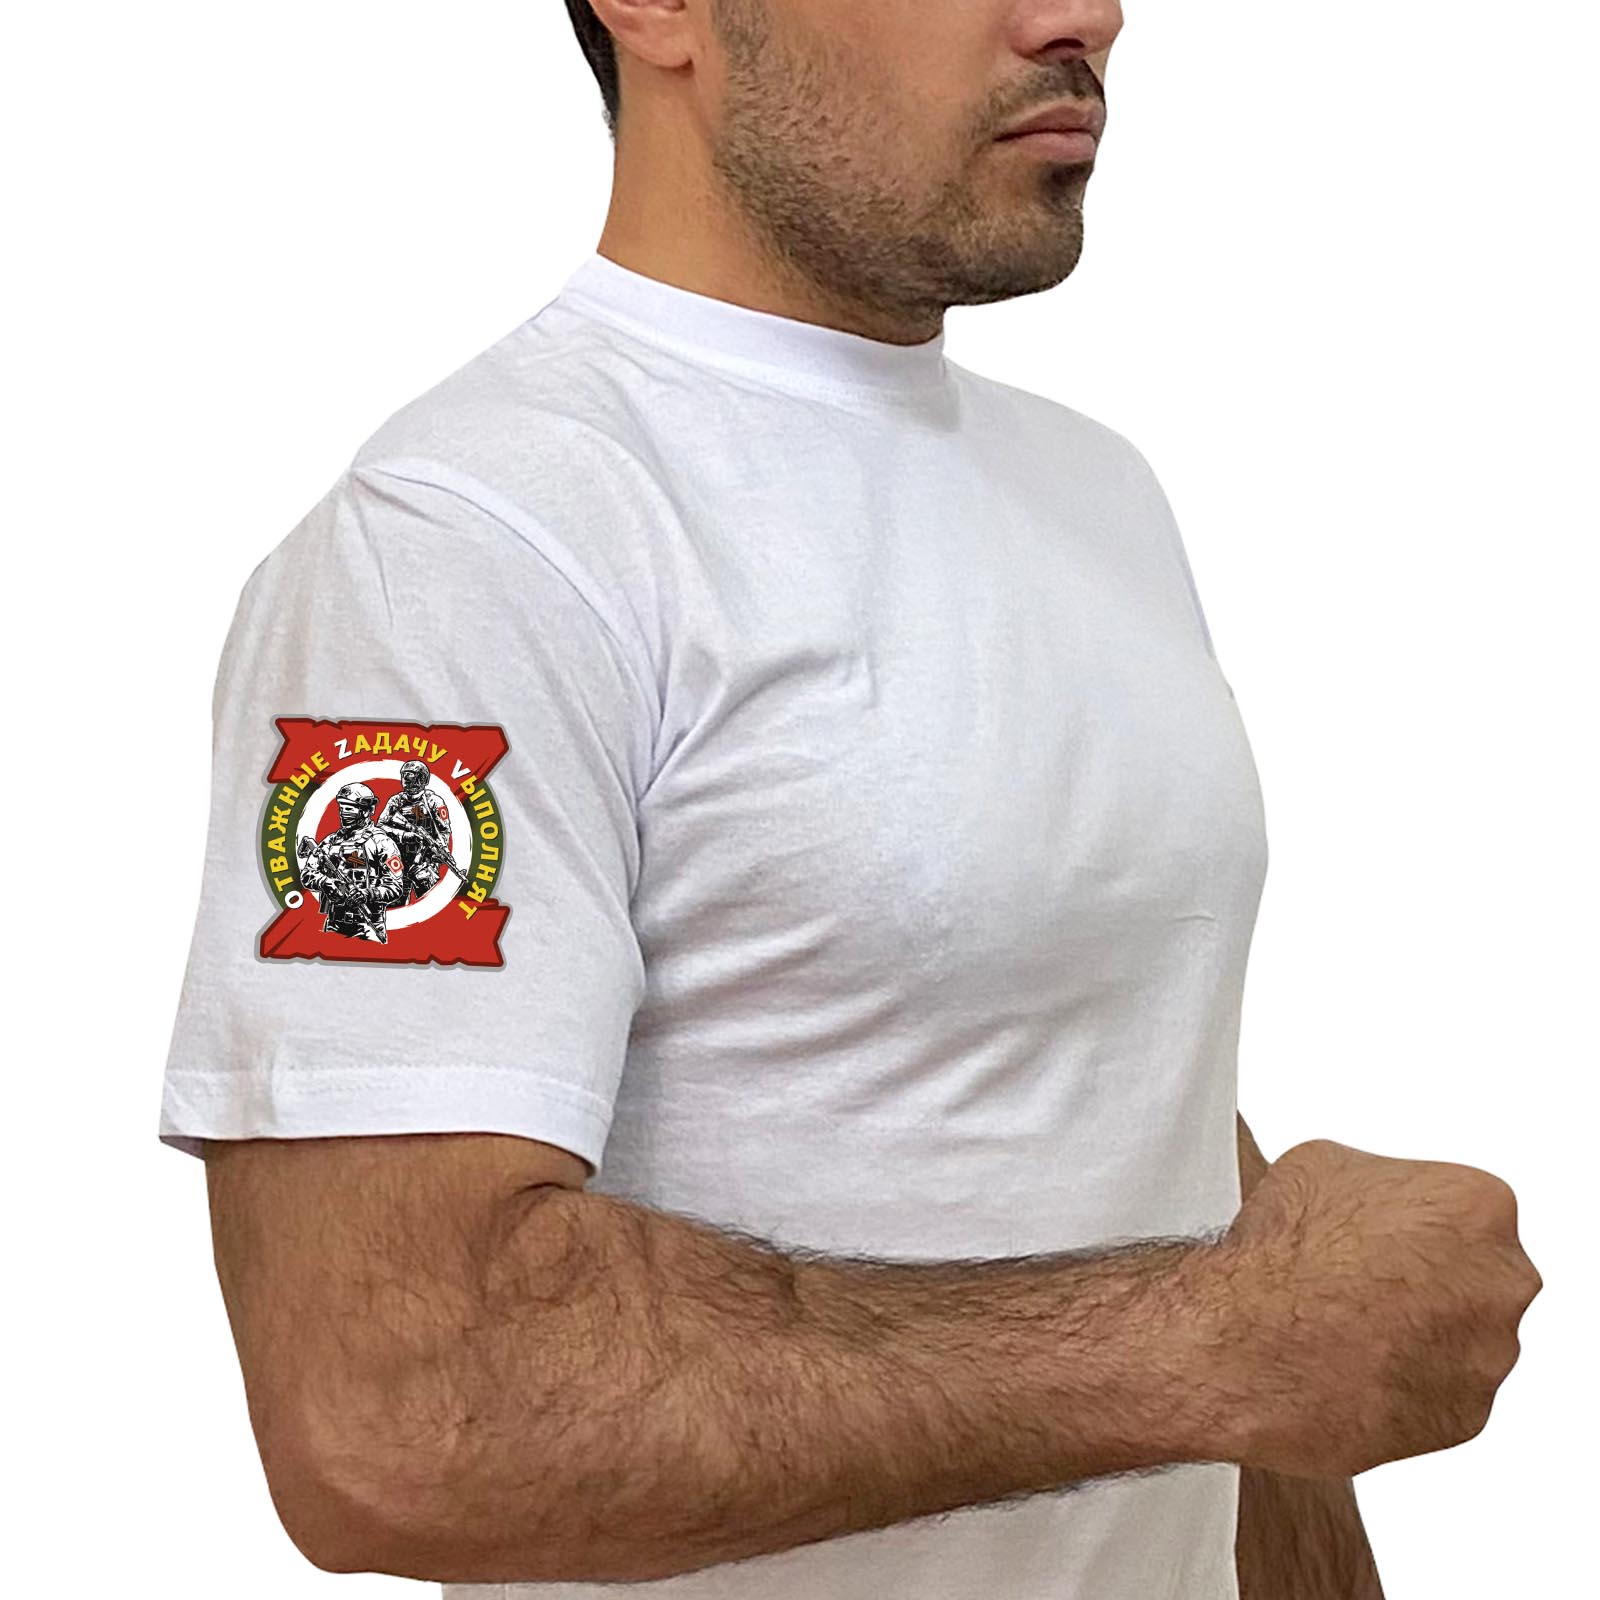 Белая футболка с термотрансфером "Отважные Zадачу Vыполнят" на рукаве